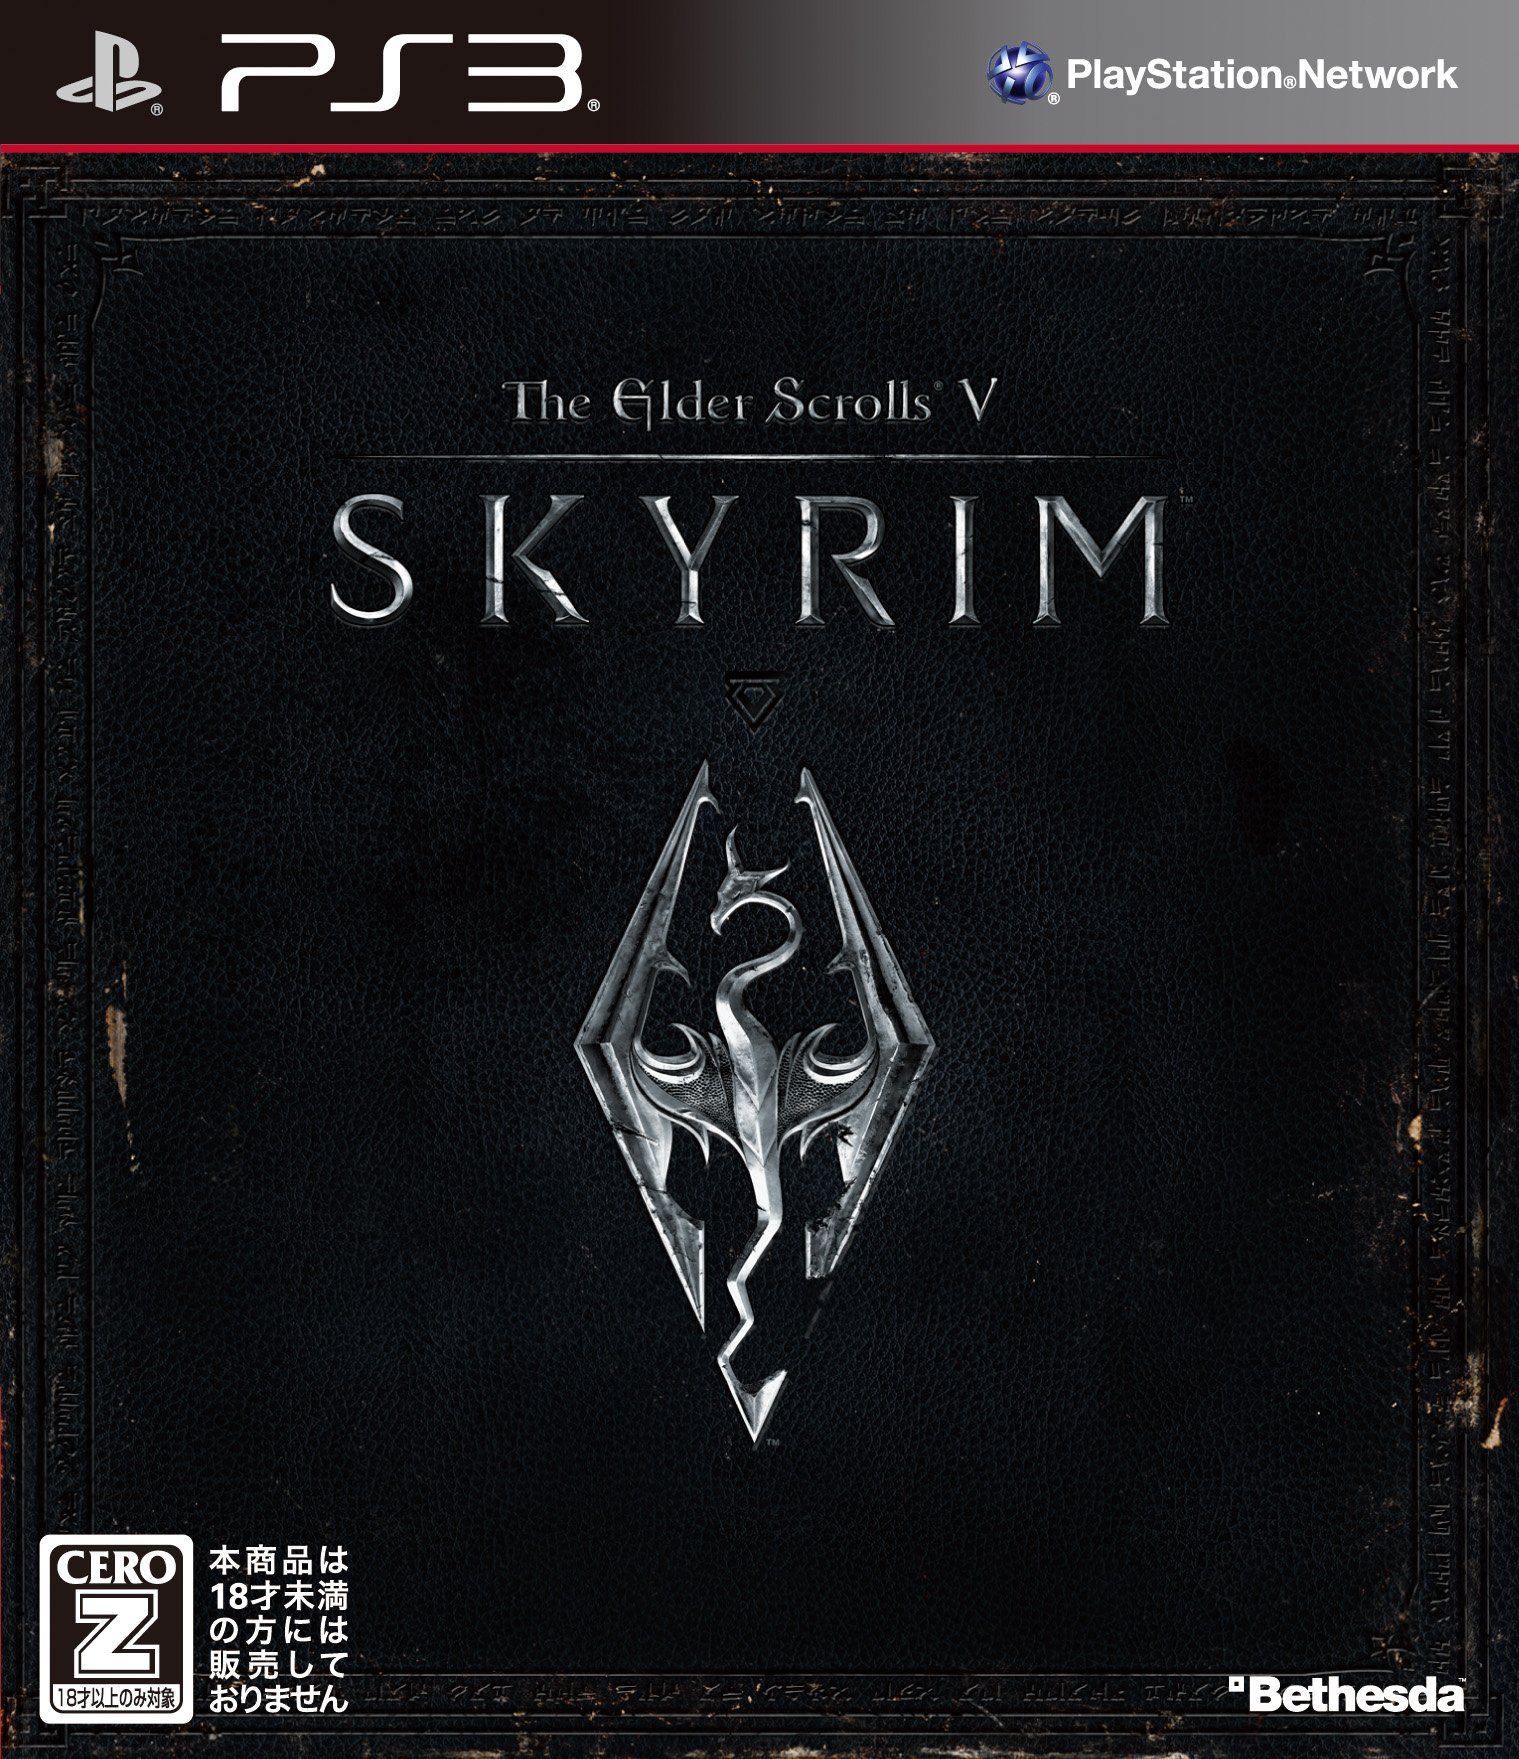 The Elder Scrolls V: Skyrim 【CEROレーティング「Z」】 - PS3